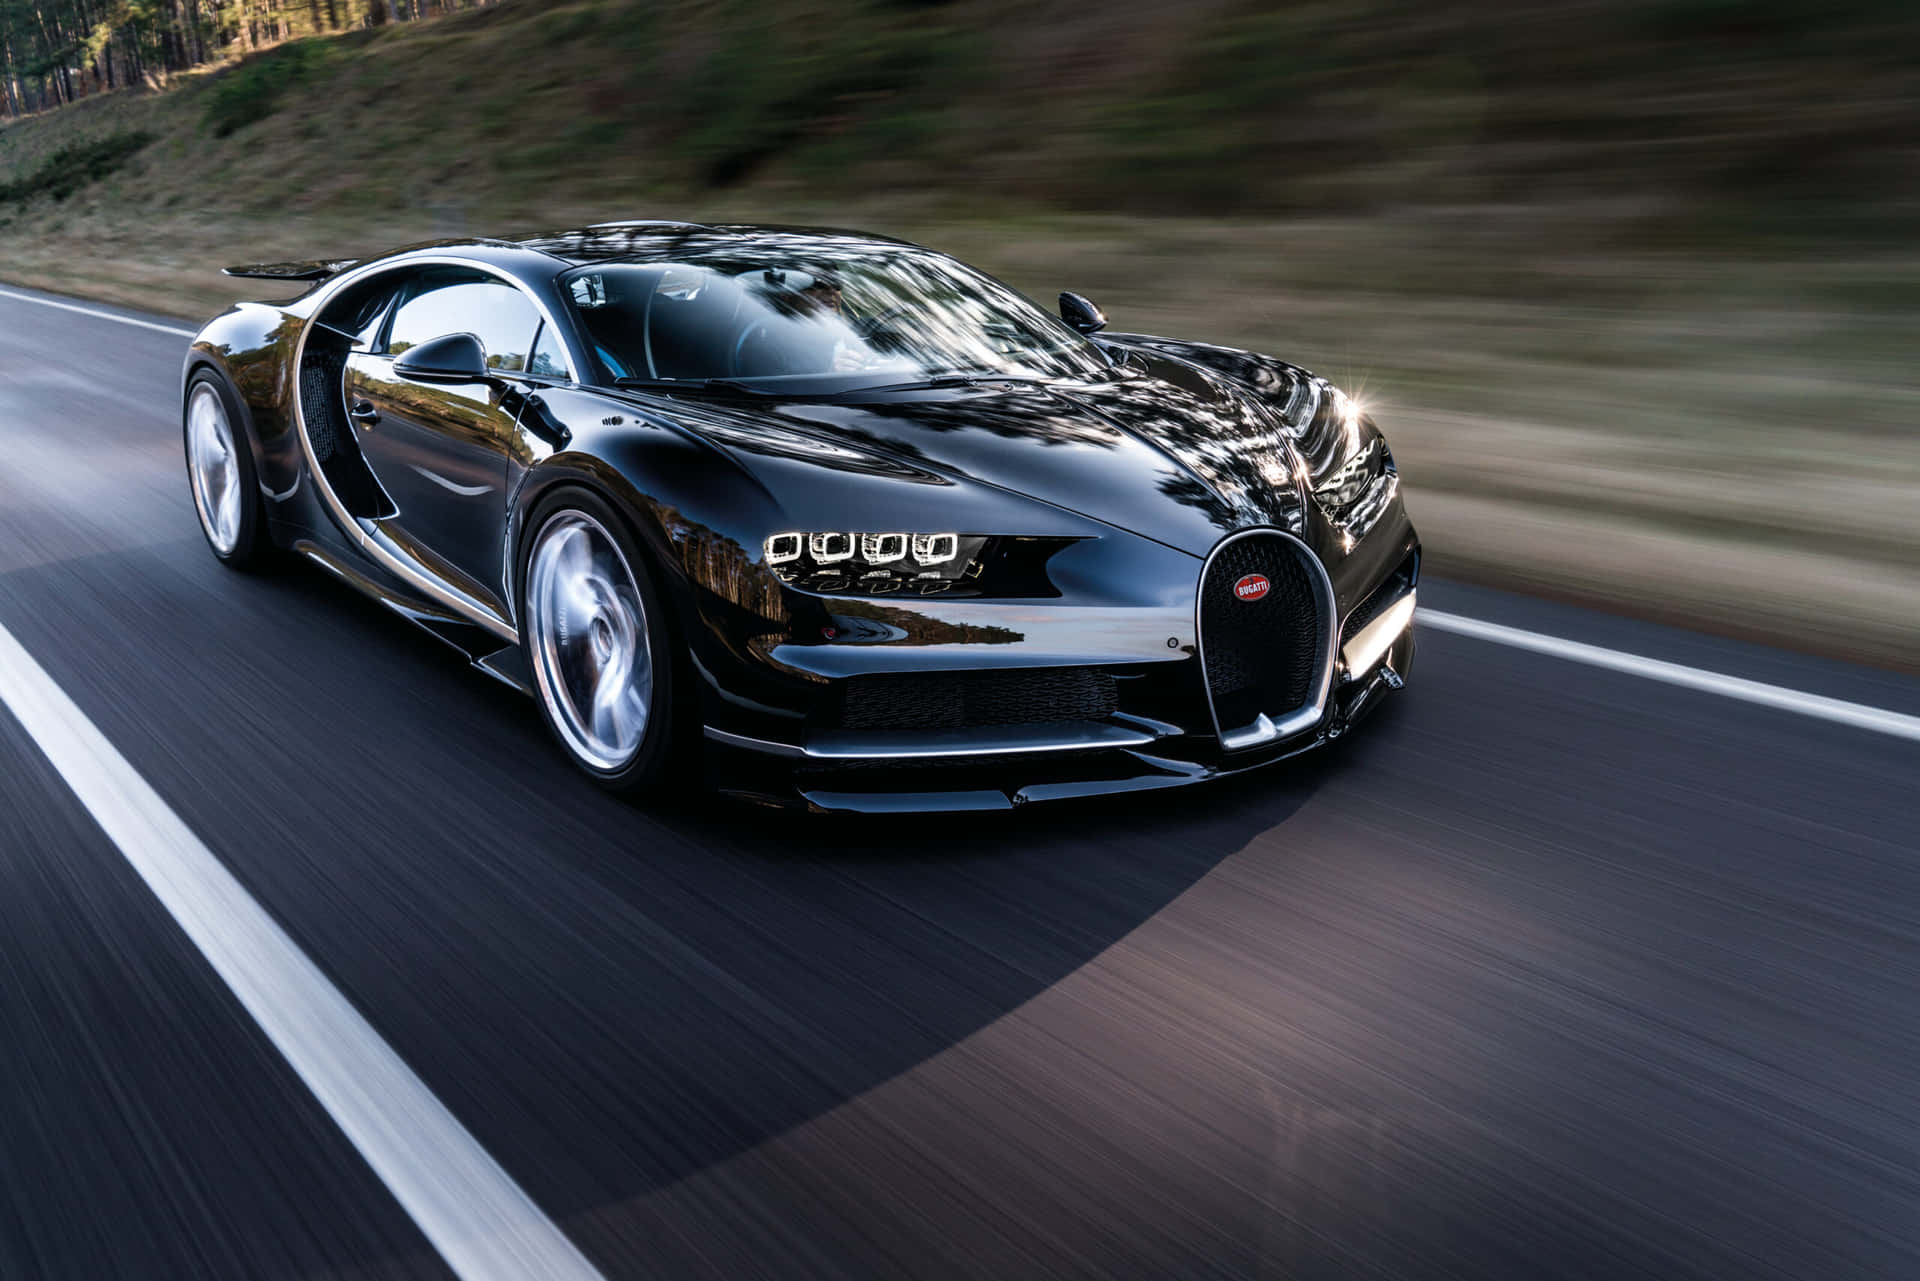 Velocidady Estilo Unidos En El Lujoso Bugatti